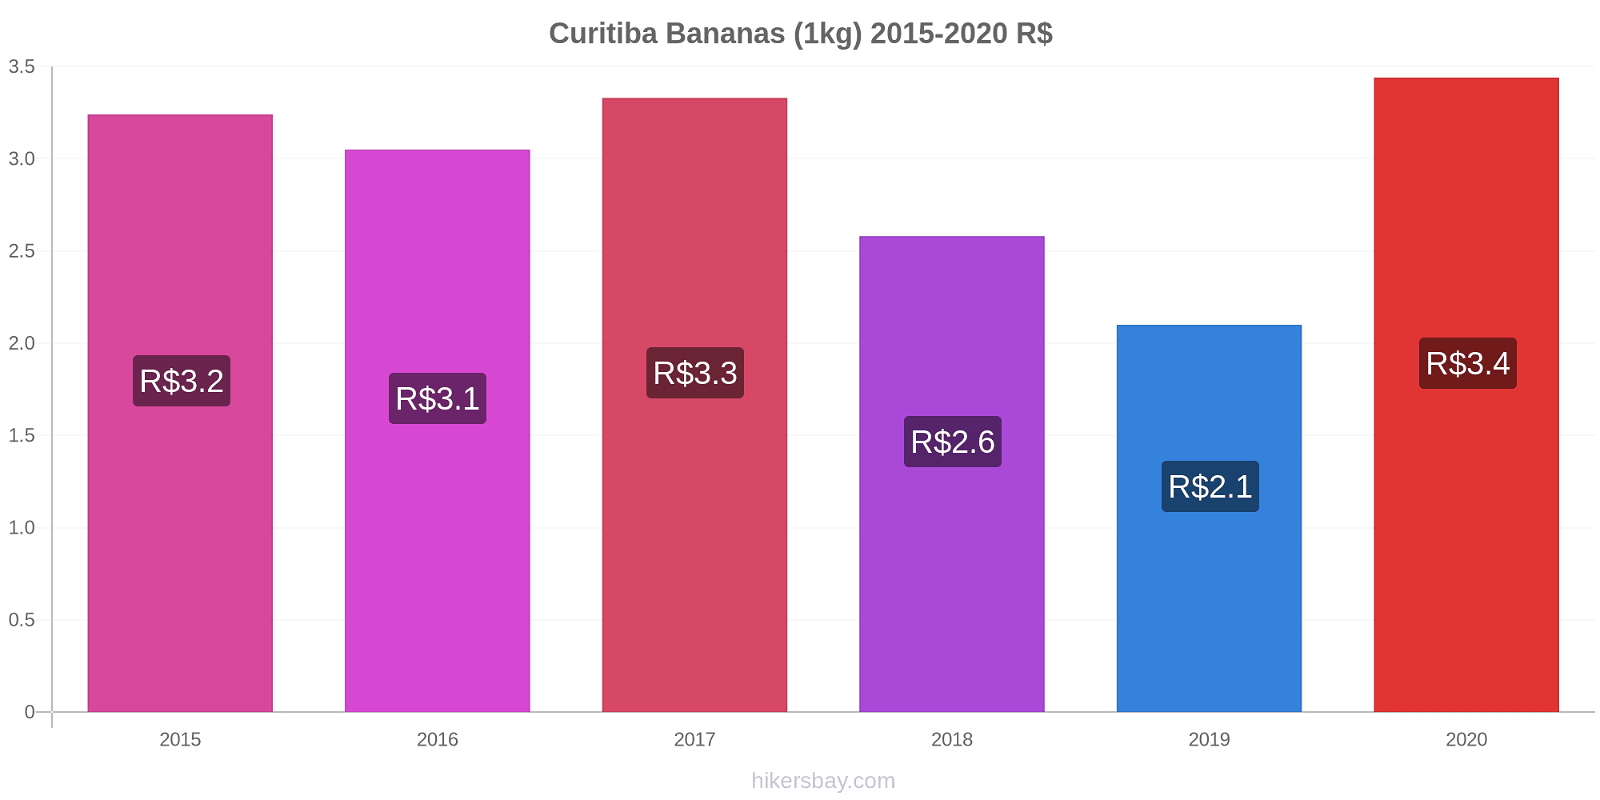 Curitiba variação de preço Banana (1kg) hikersbay.com